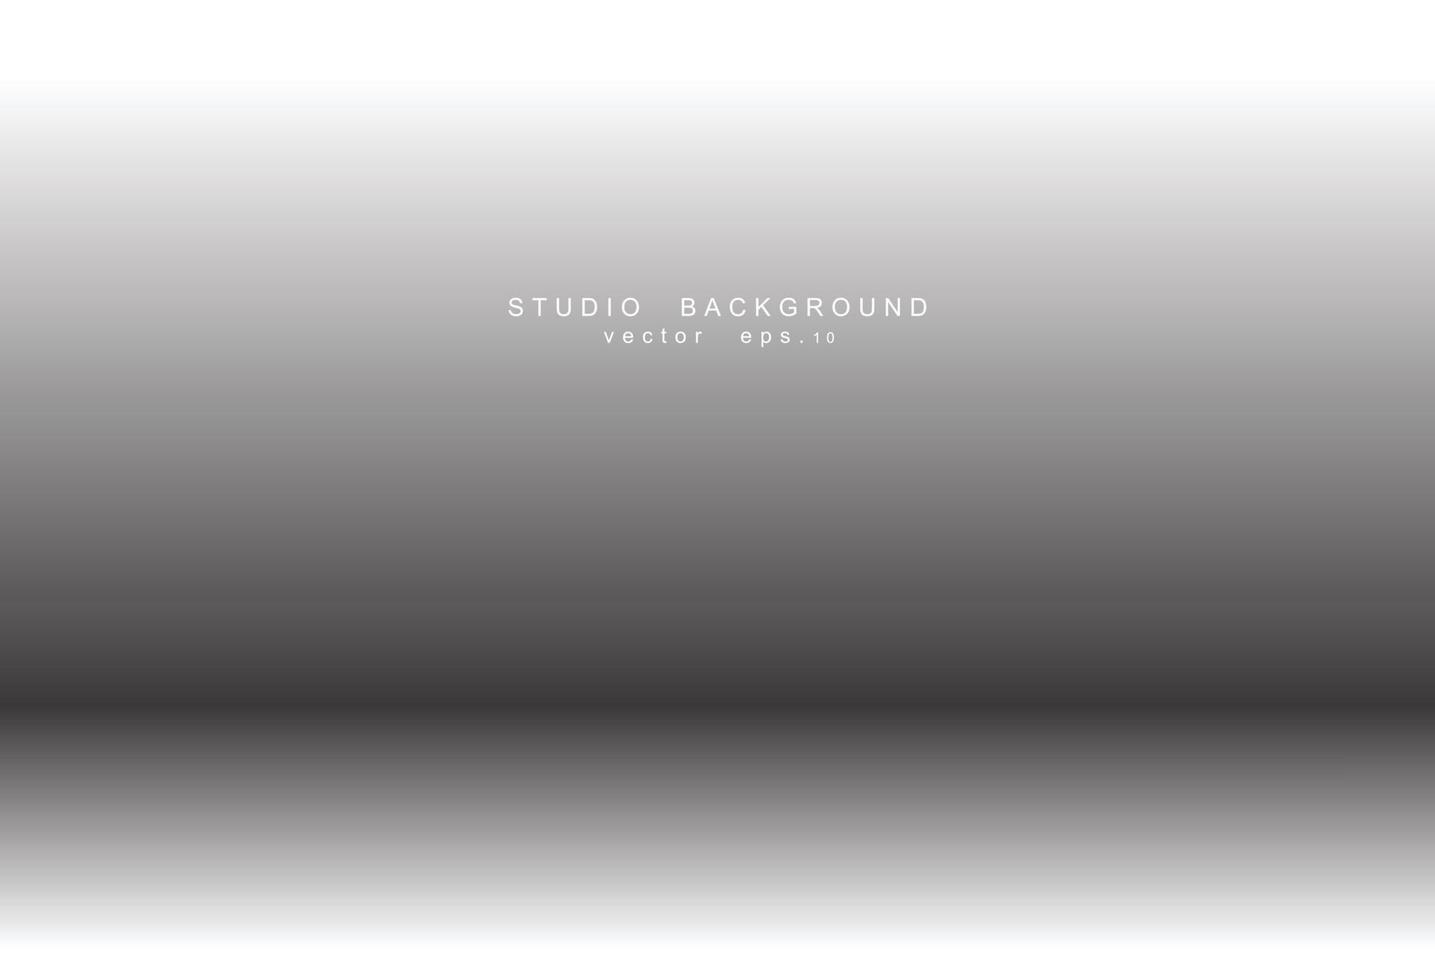 tom vit grå tonad studiorumsbakgrund. bakgrundsinredning med copyspace för ditt kreativa projekt, vektorillustration eps 10 vektor